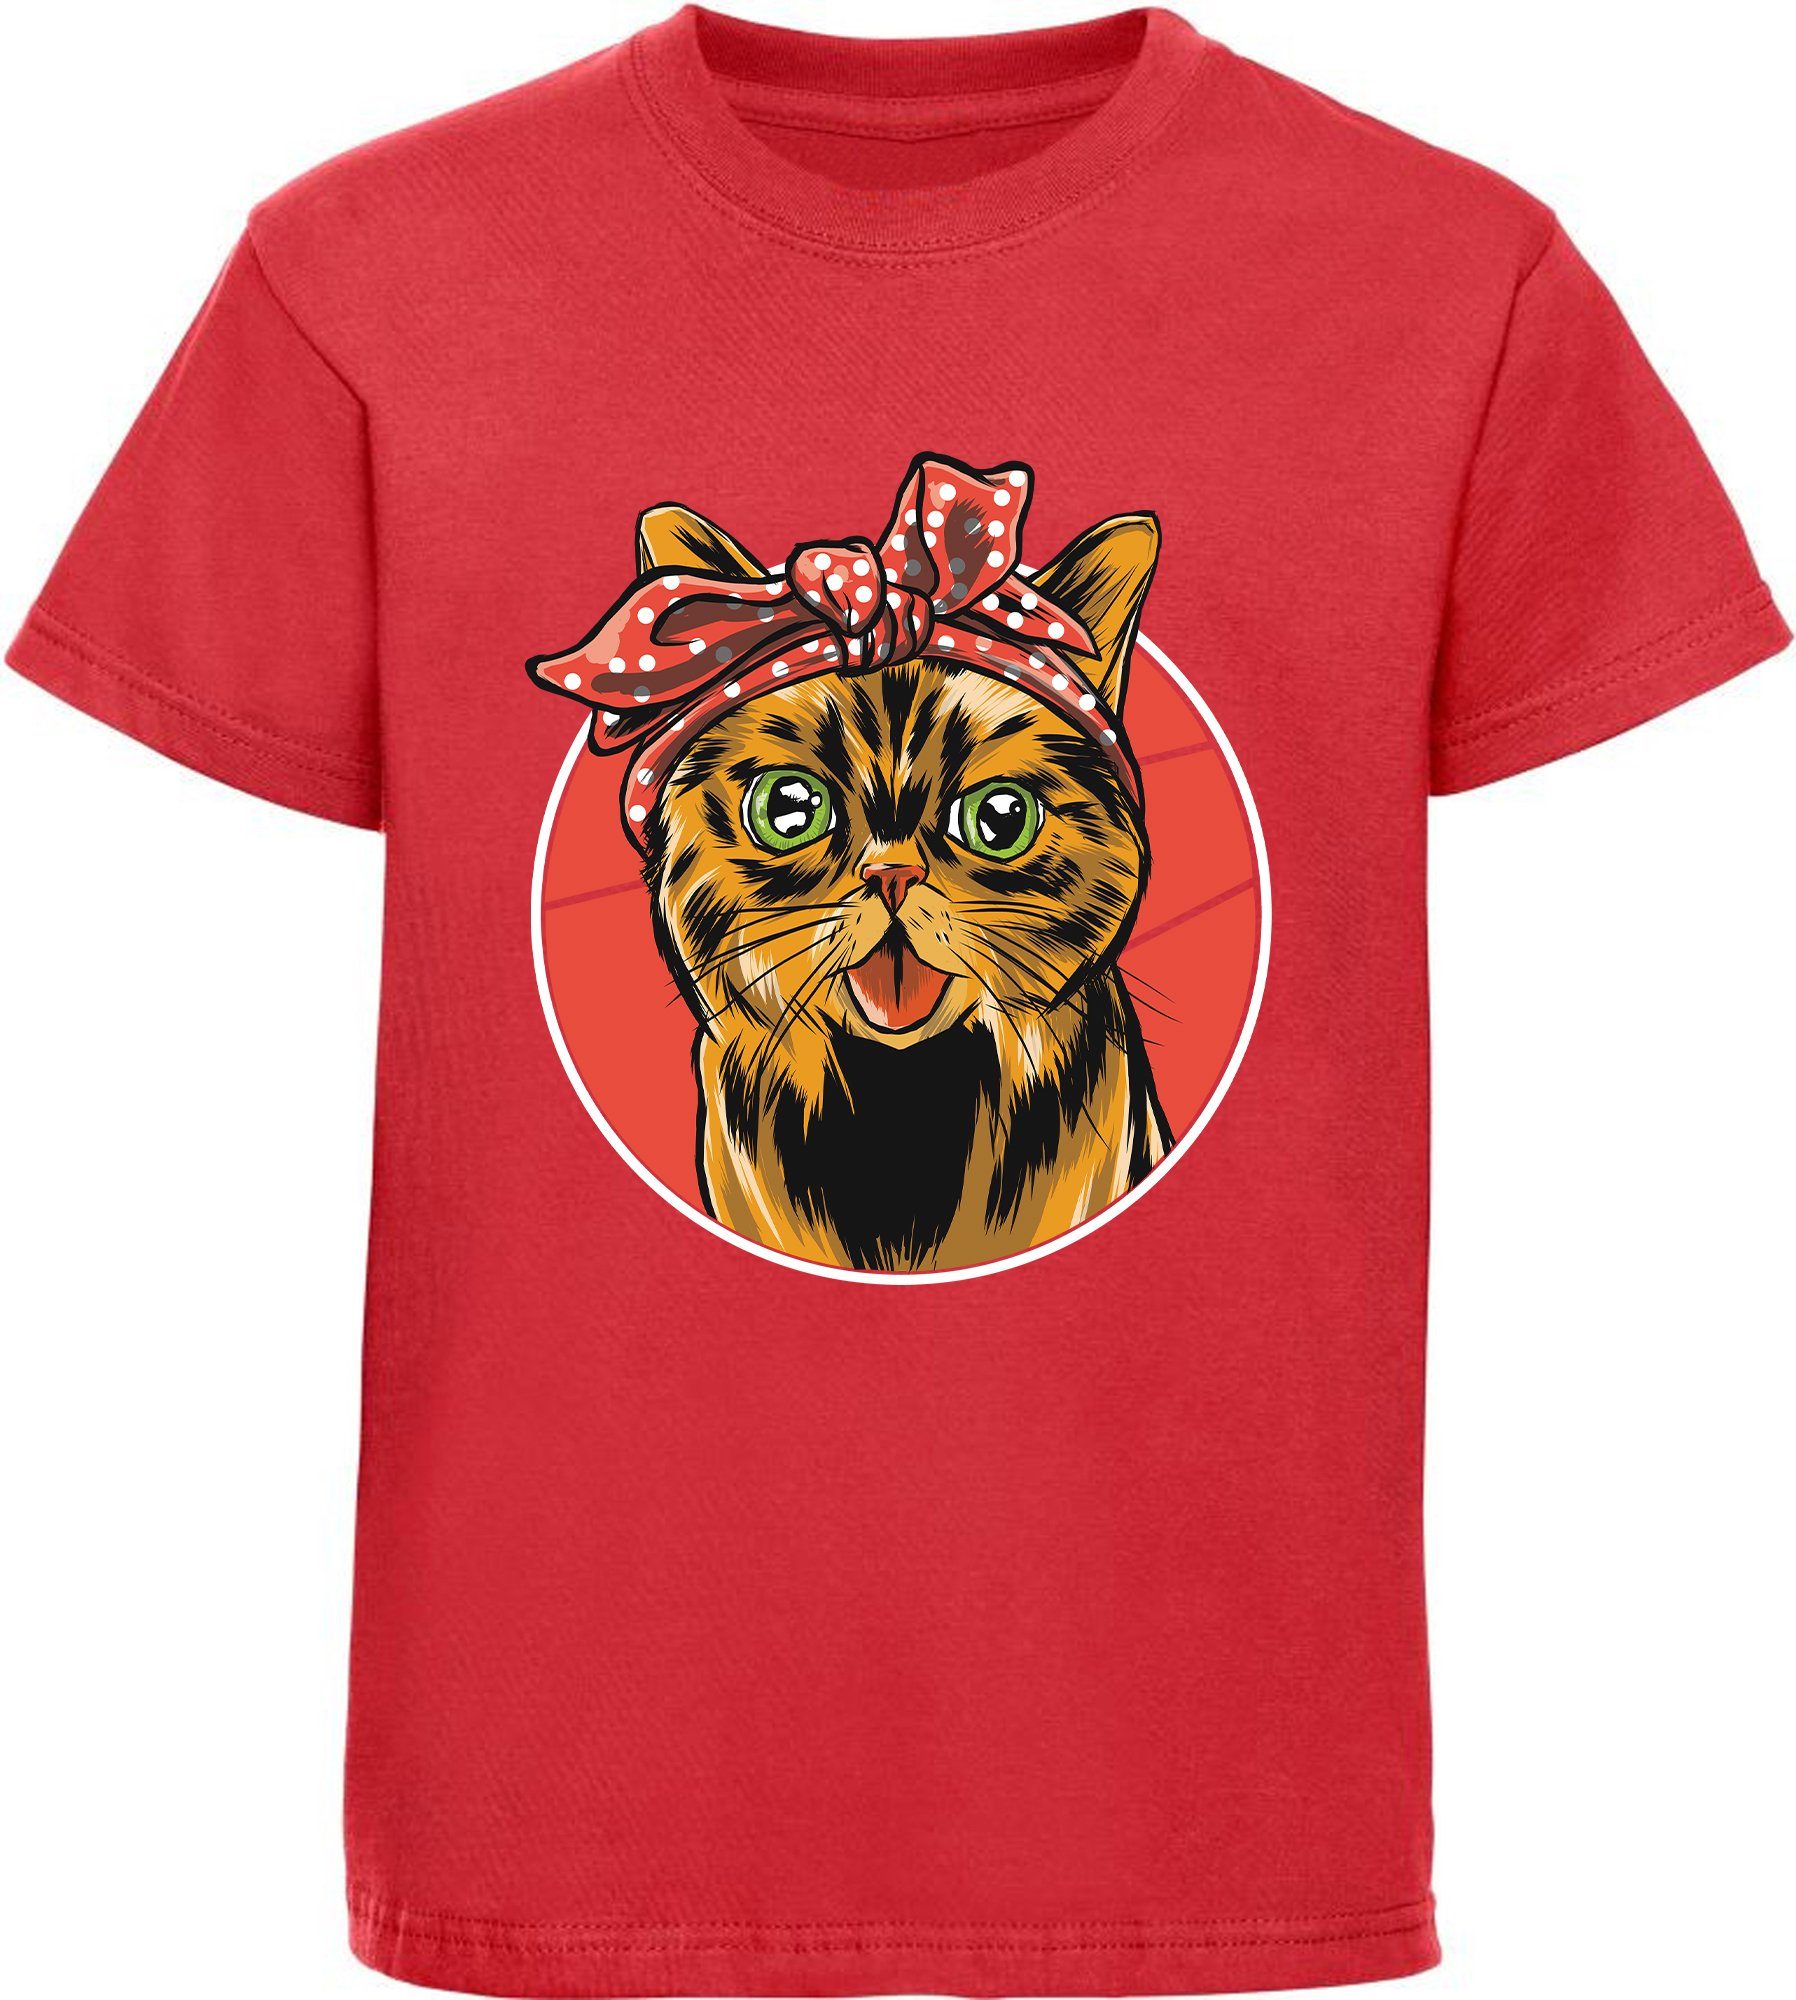 MyDesign24 Print-Shirt bedrucktes Kinder Katze, Schleife T-Shirt rosa, Katze Mädchen schwarz, weiß, mit Baumwollshirt i103 mit rot